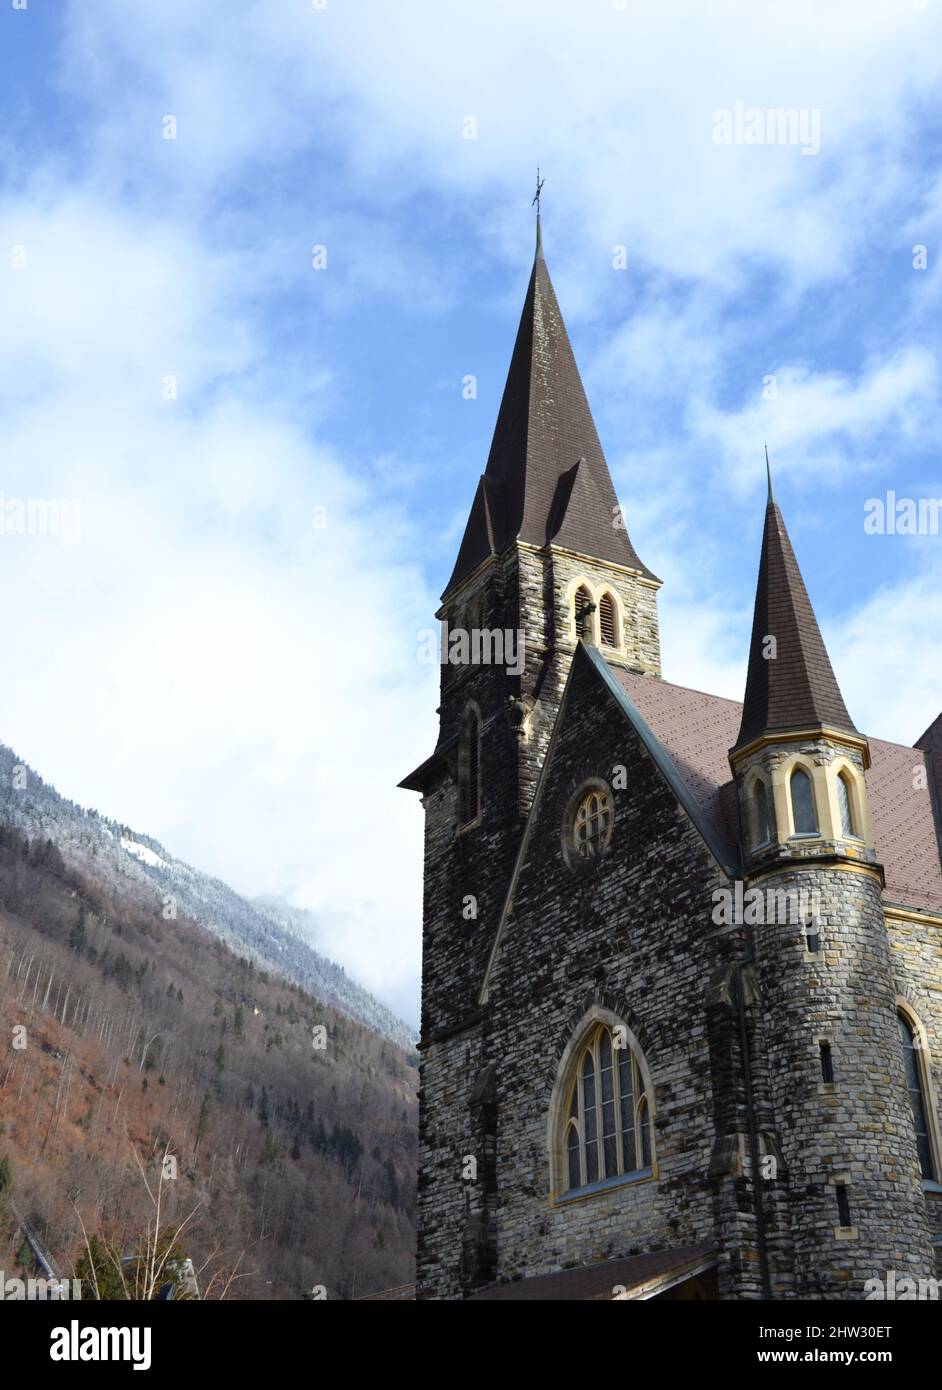 Interlaken Catholic Church in Switzerland Stock Photo